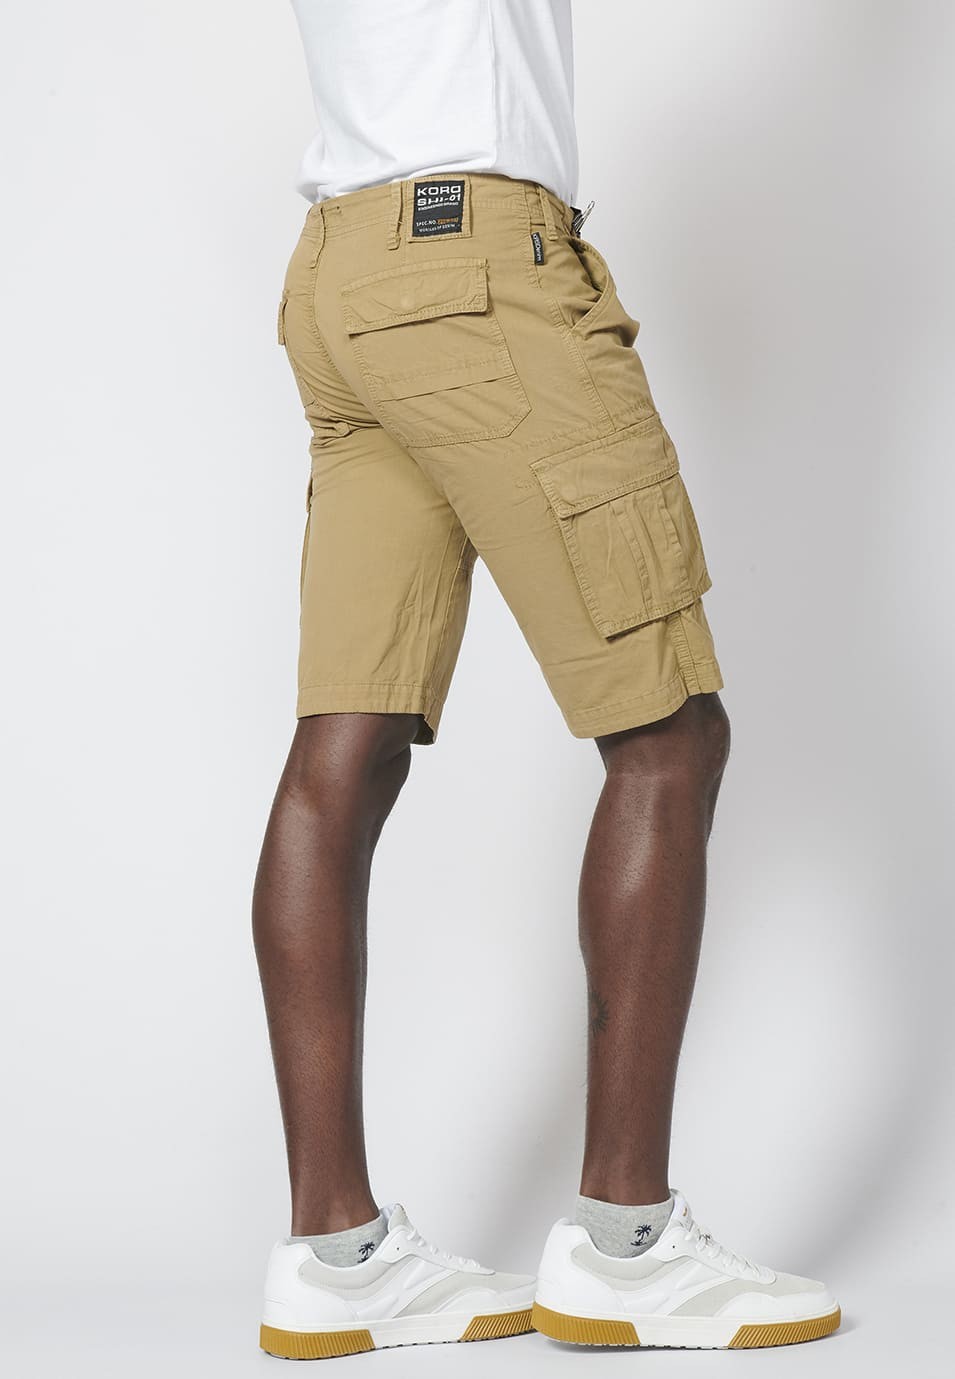 Bermuda pantalón corto estilo cargo para hombre con seis bolsillos 5